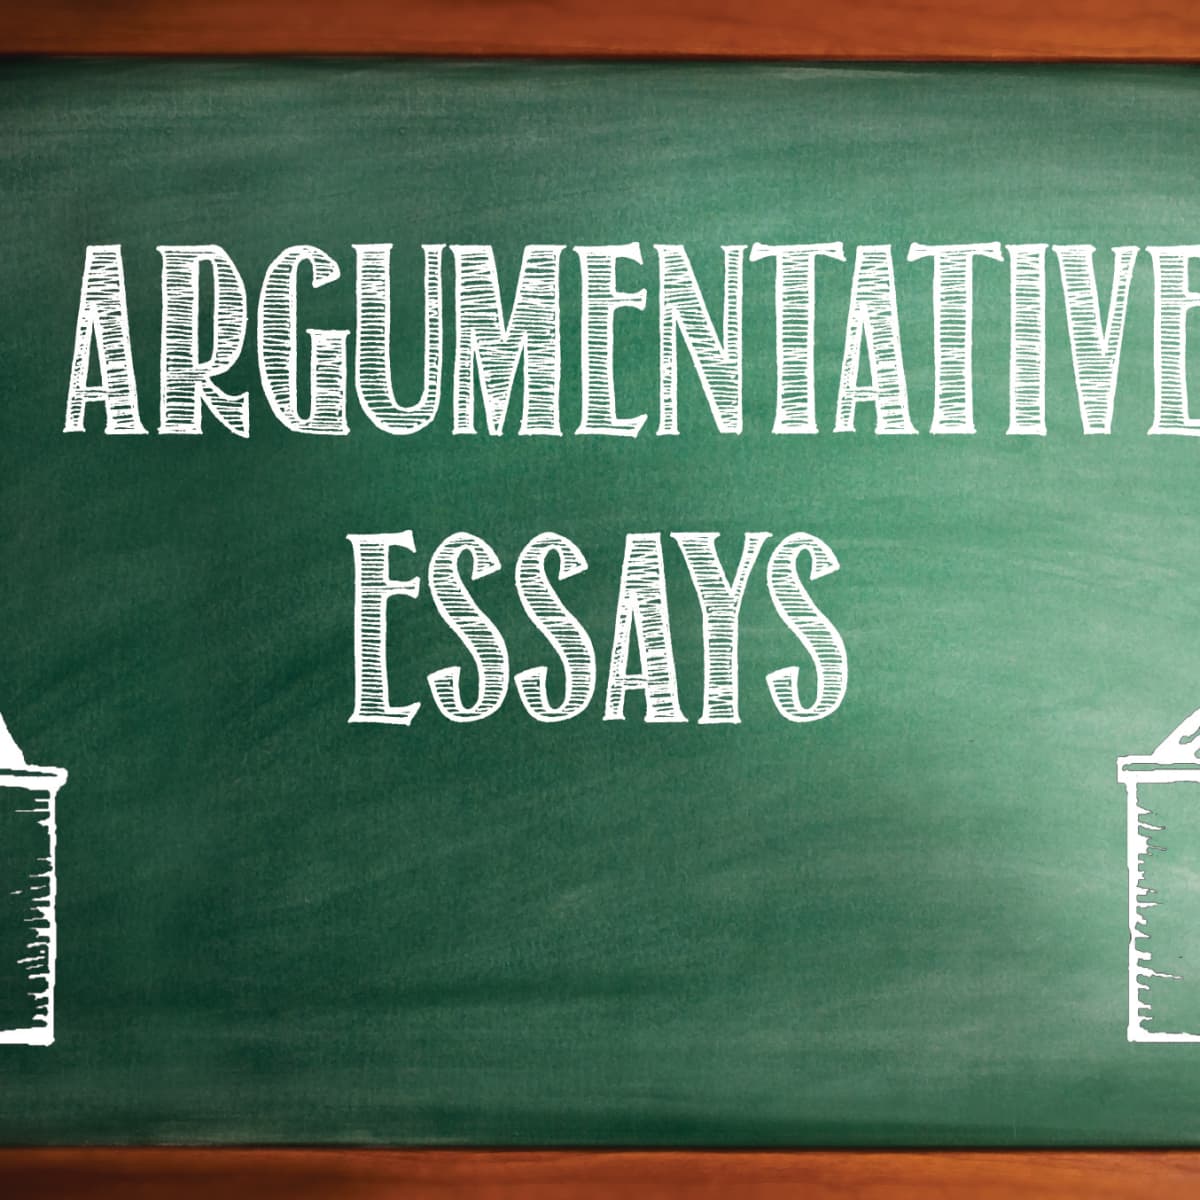 persuasive essay topic ideas